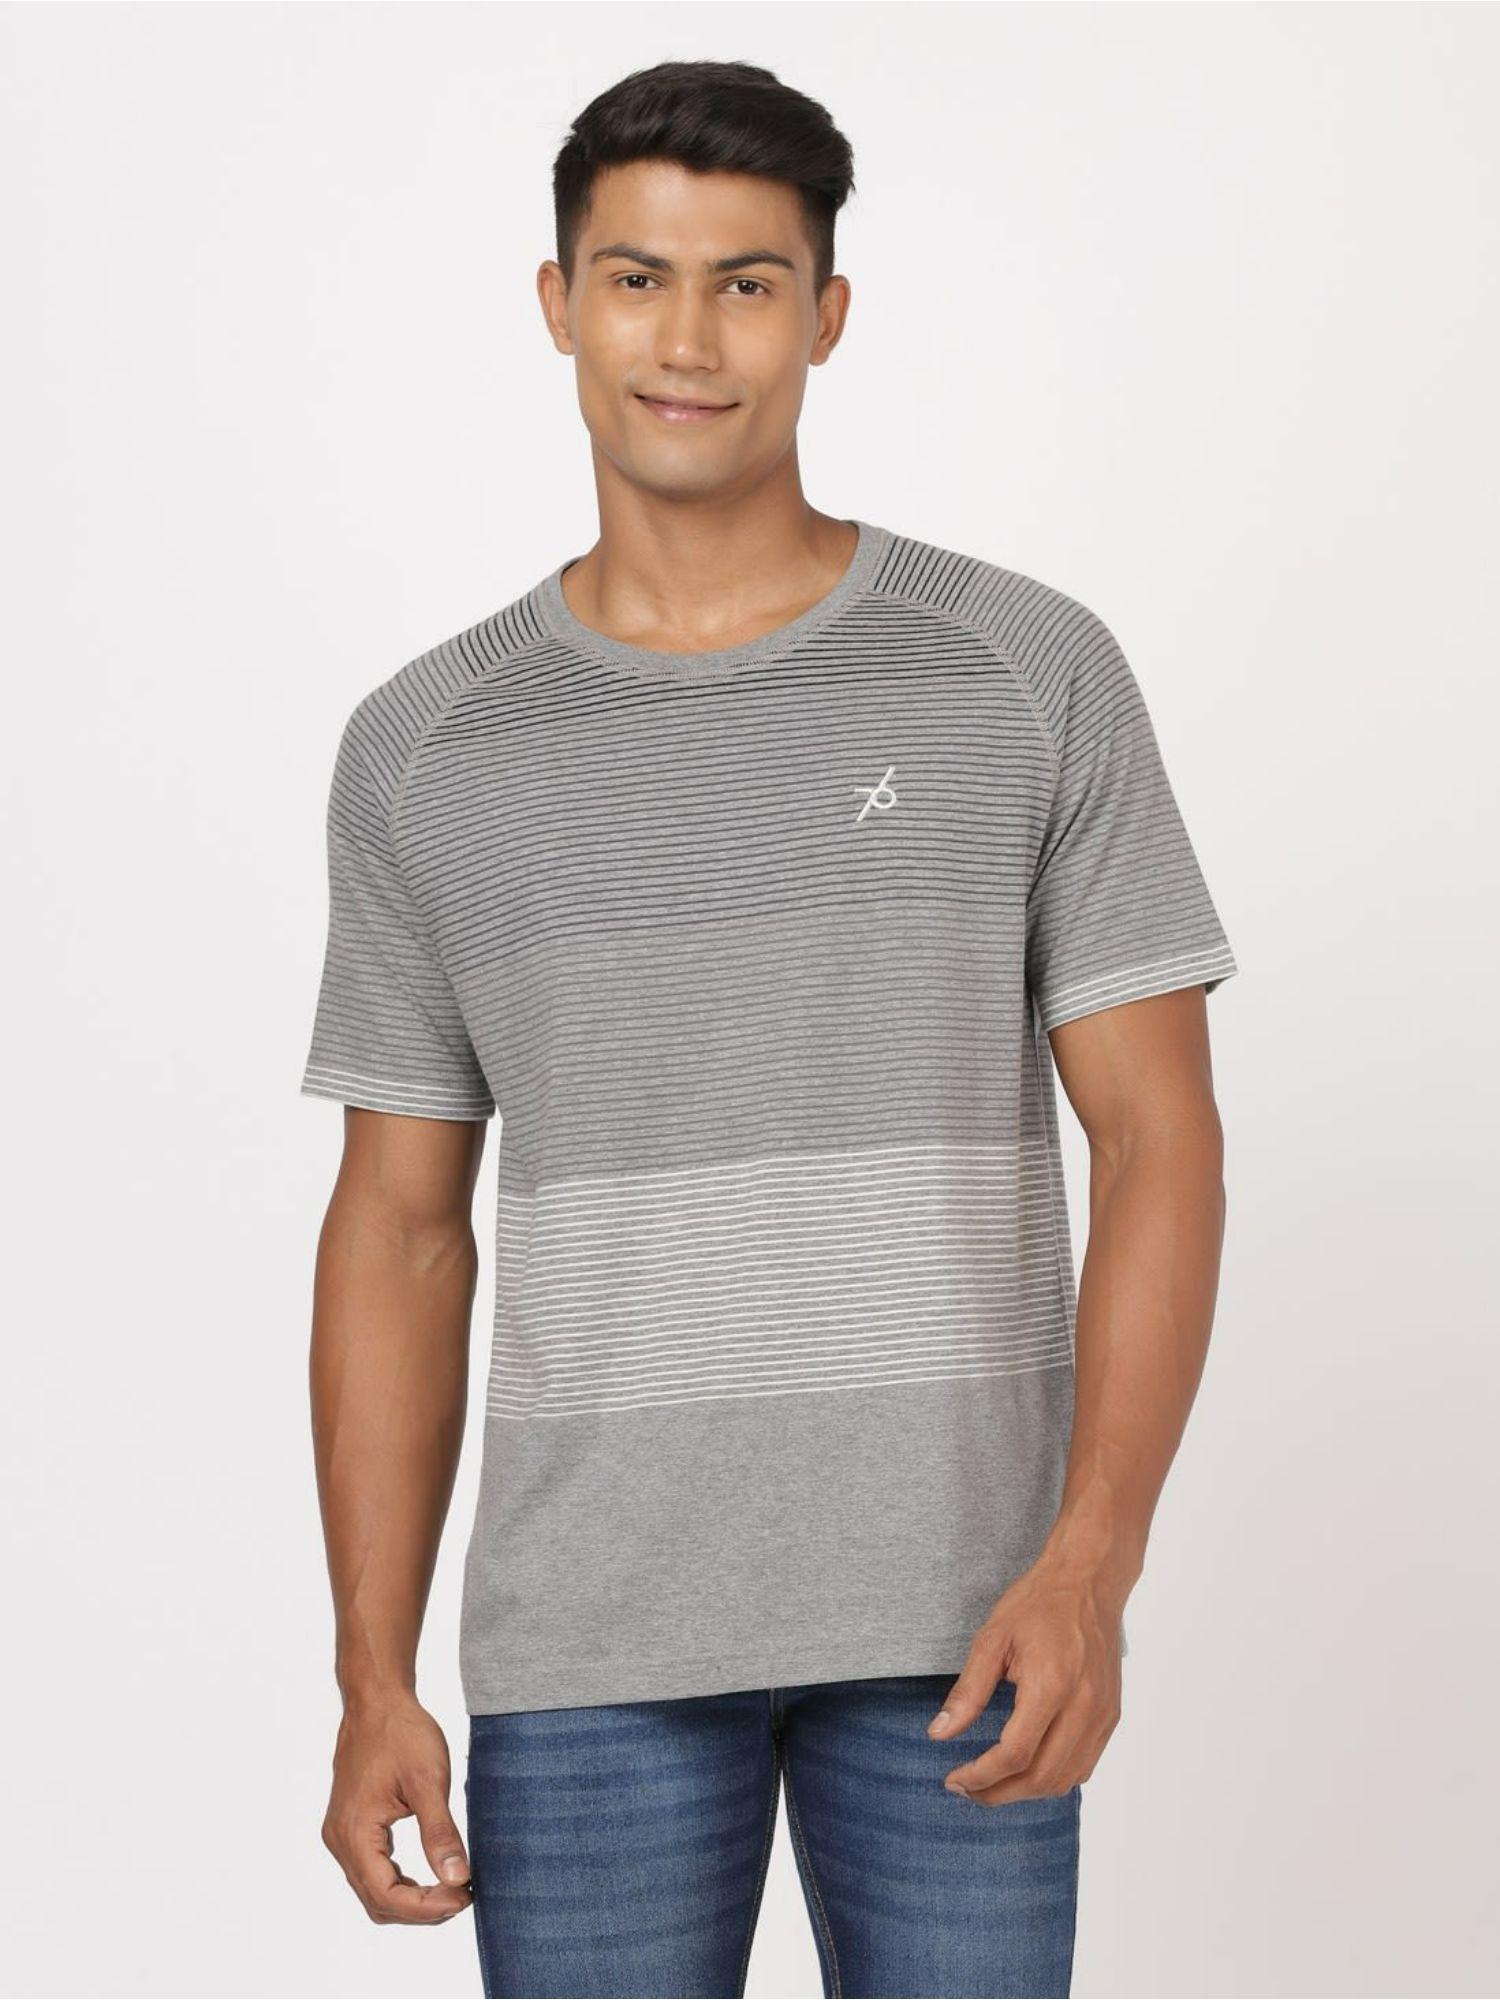 am68-super-combed-cotton-rich-striped-round-neck-half-sleeve-t-shirt-grey-melange